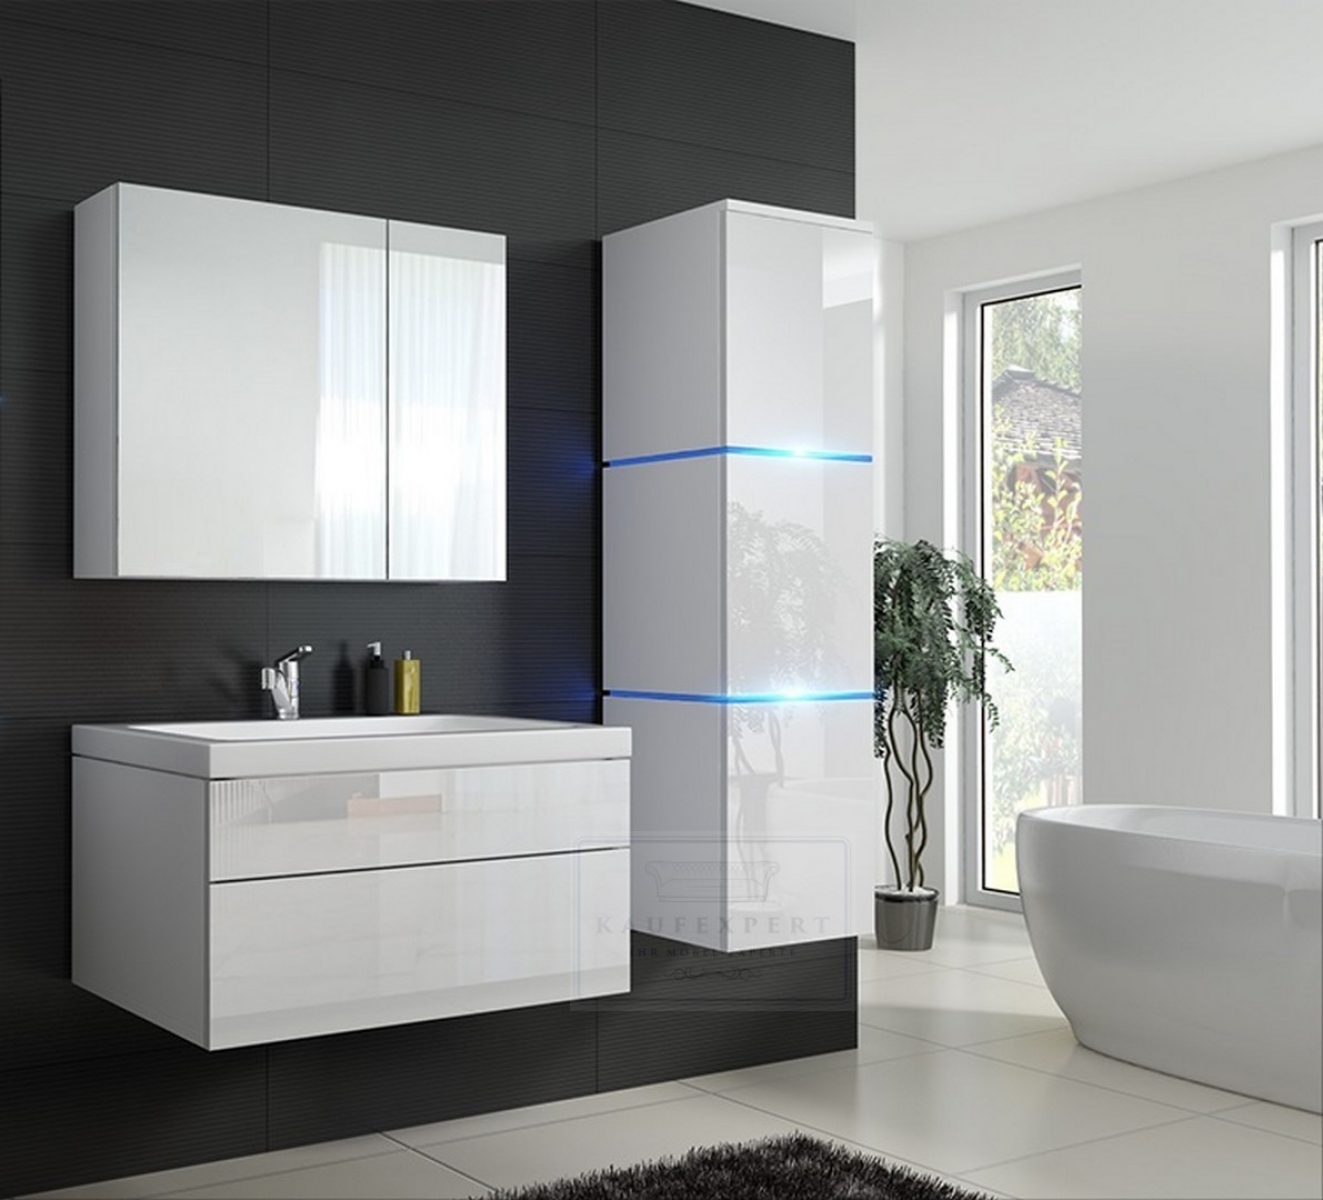 Badmöbel-Set Lux 1 NEW Weiß Hochglanz KERAMIK Waschbecken Badezimmer Led Beleuchtung Badezimmermöbel Keramikbecken